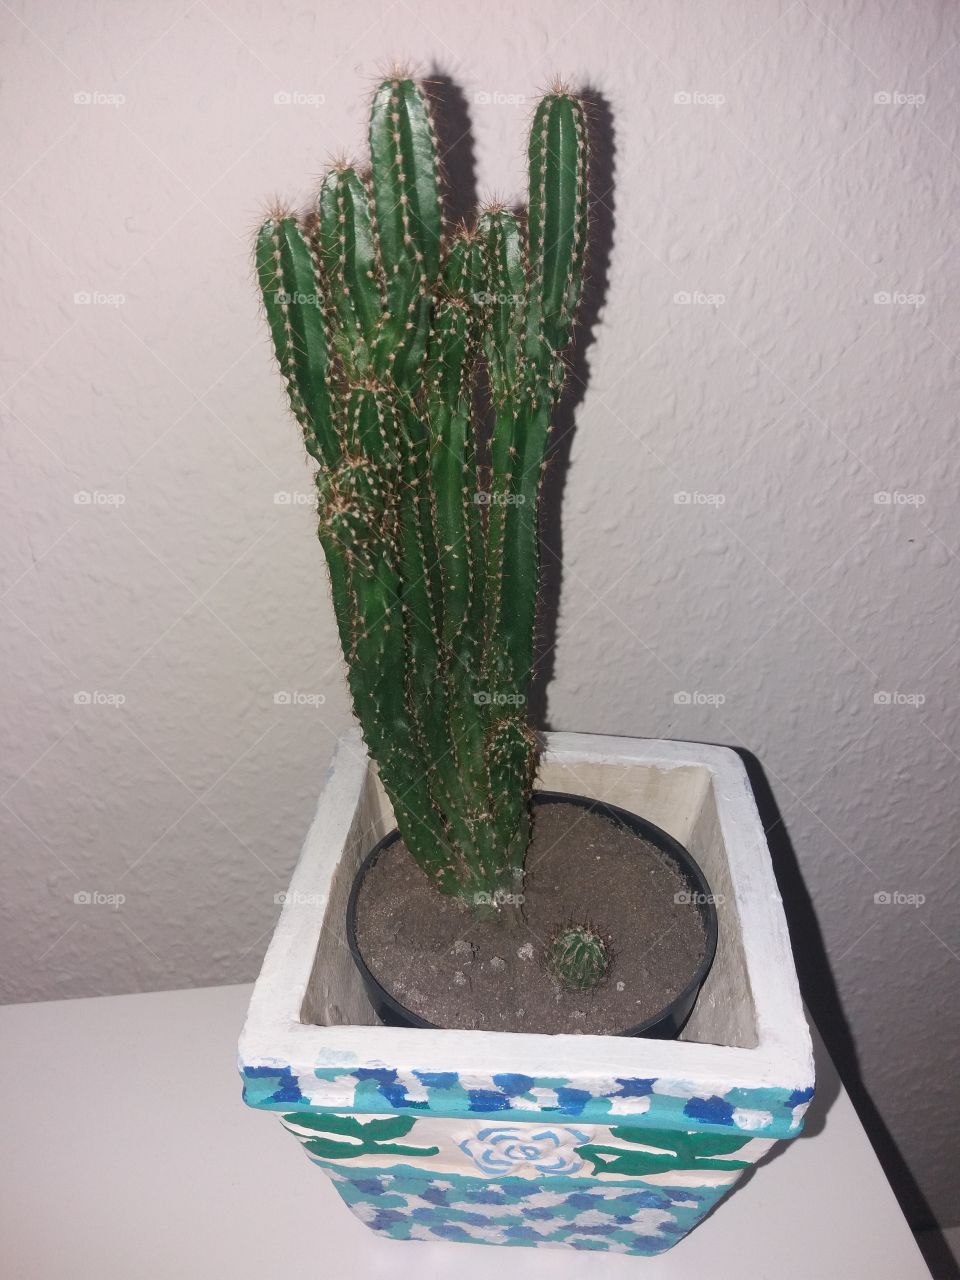 my cactus